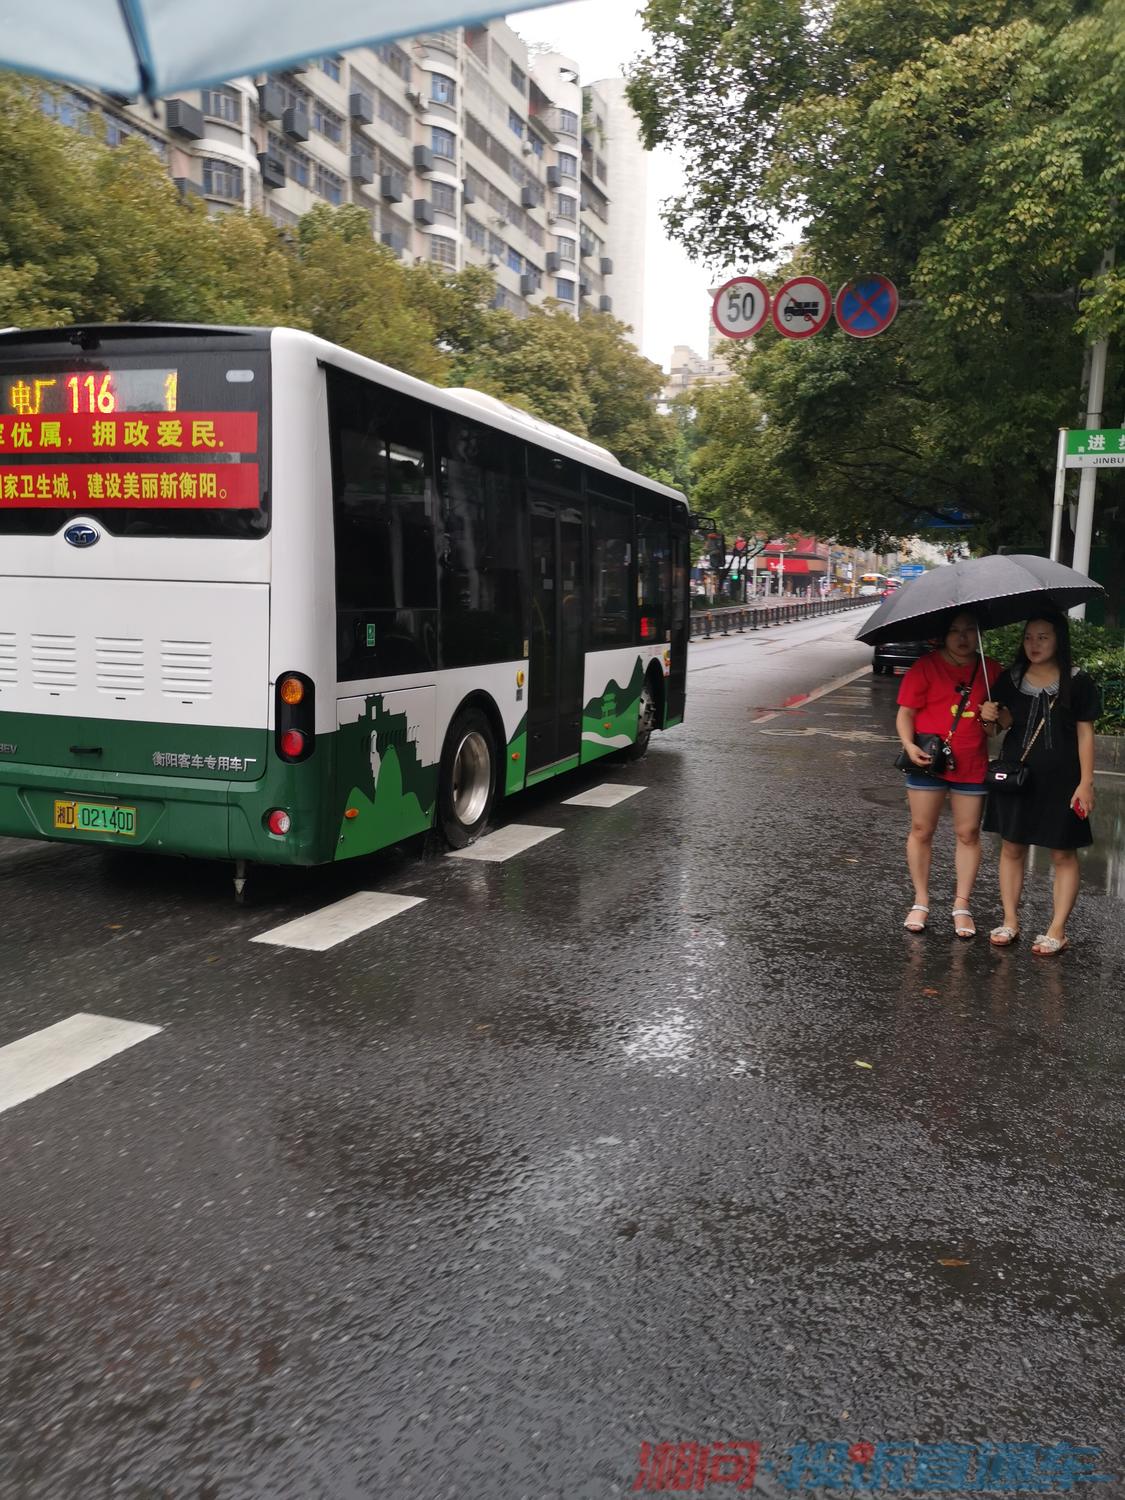 （转载）广州二汽收购三家公交民企 获政府补贴2.4亿元 - 哔哩哔哩